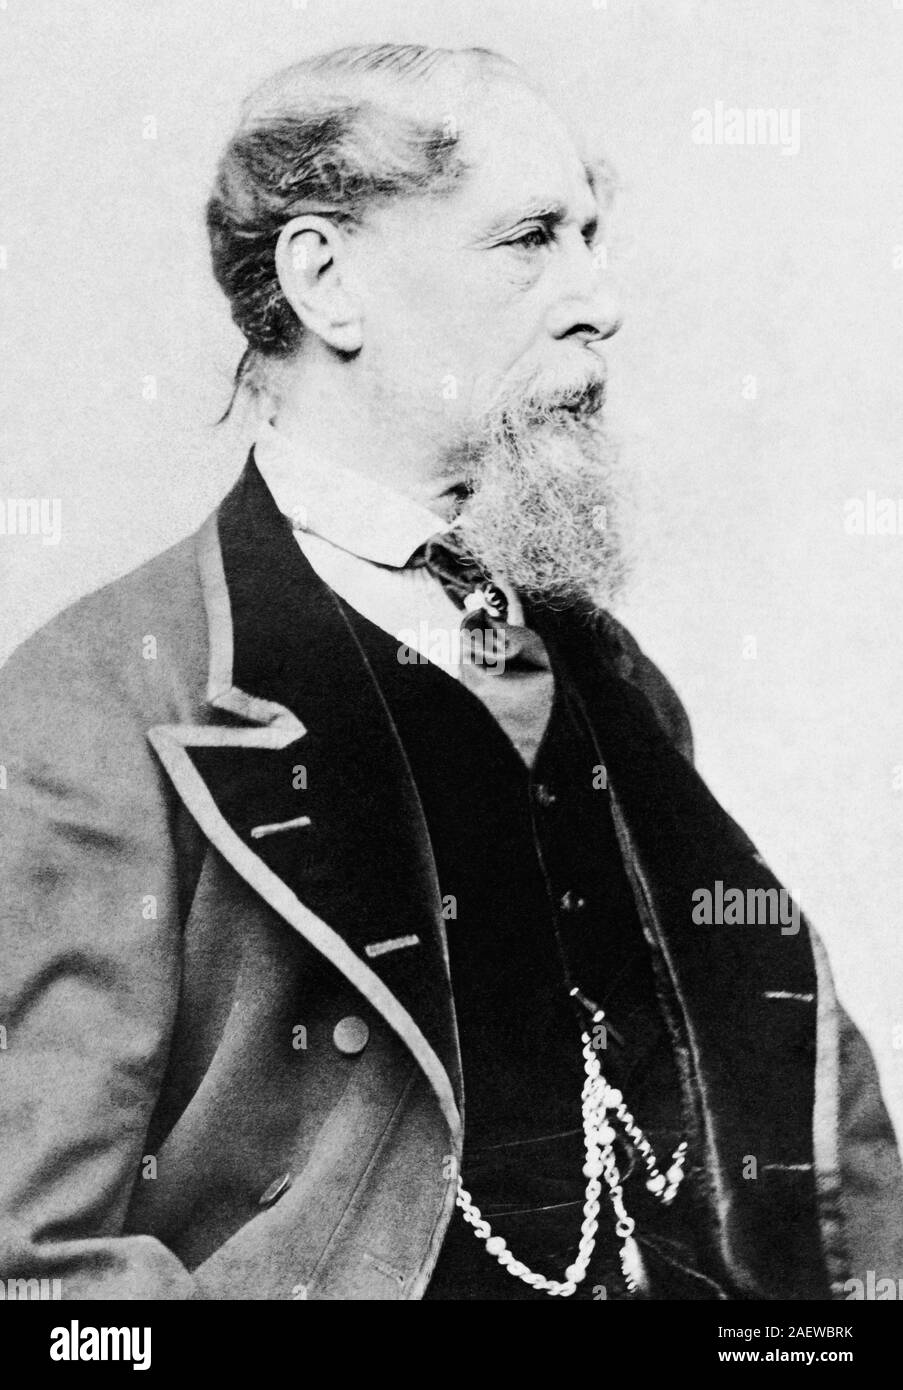 Jahrgang Porträt Foto des Englischen Autors Charles Dickens (1812 - 1870). Foto ca. 1867 von J Gurney & Sohn in New York. Stockfoto